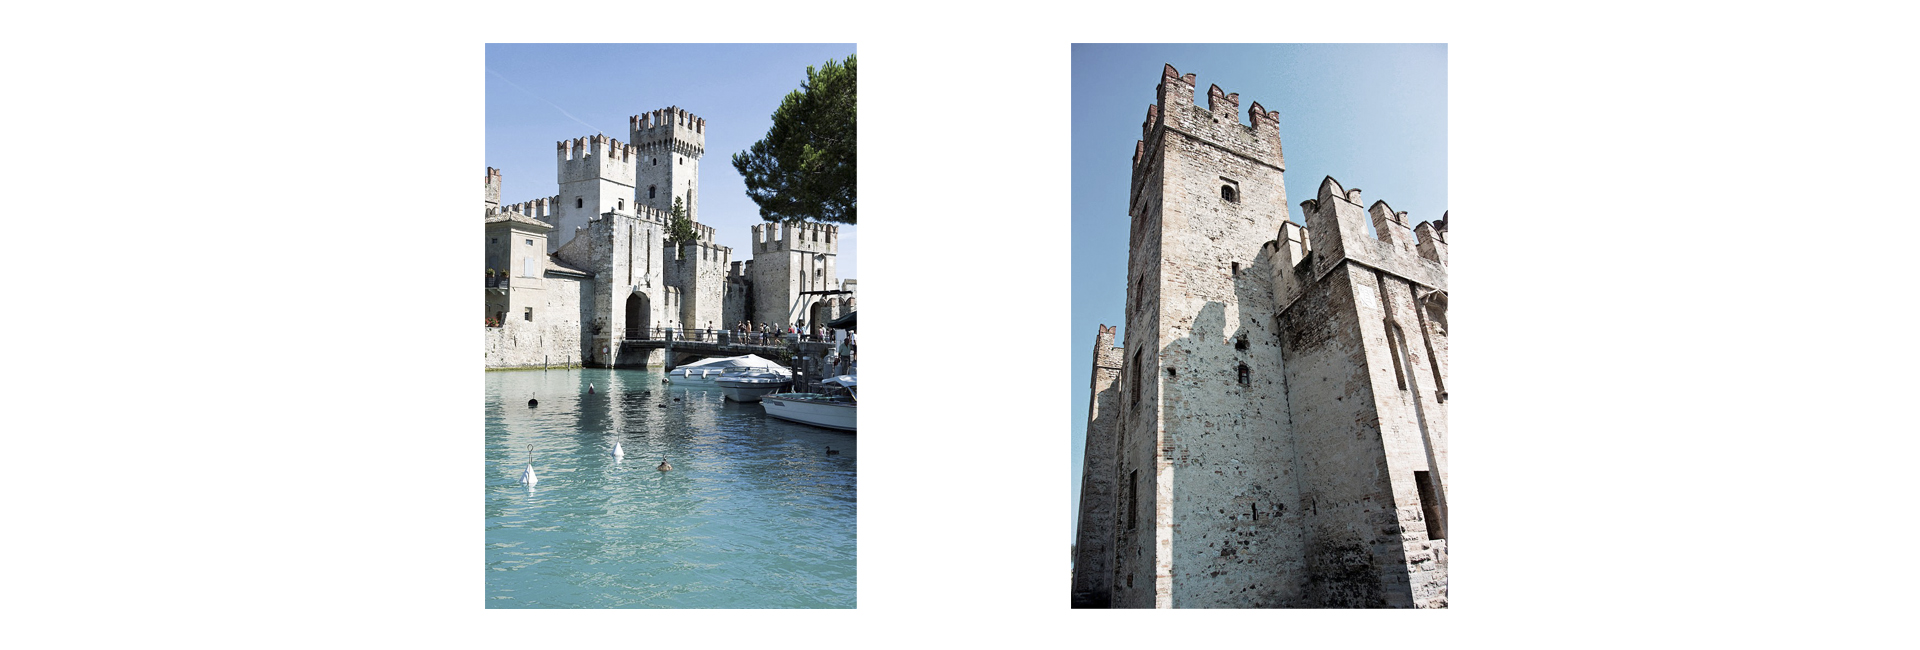 Что посмотреть в Венеции и ее окрестностях помимо биеннале (фото 7)